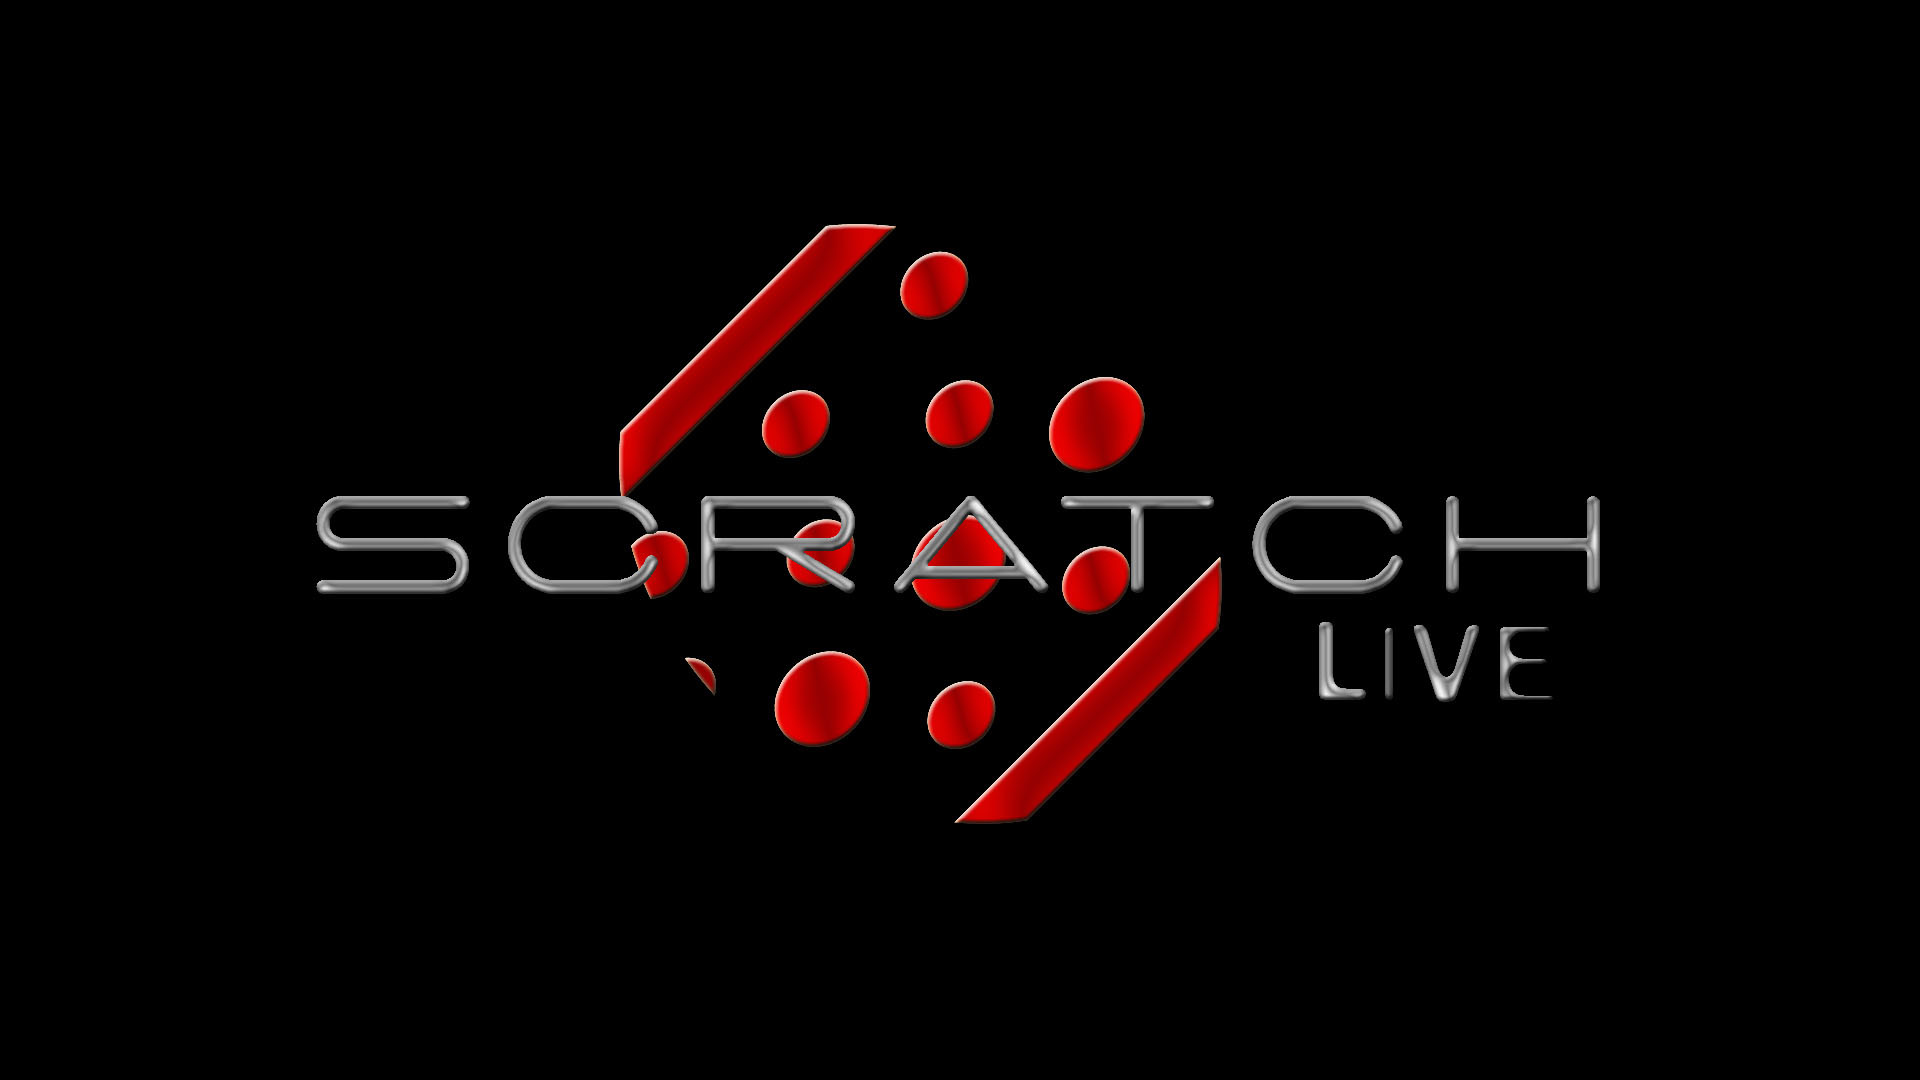 1920x1080 Serato Dj Logo Serato scratch live wallpaper 